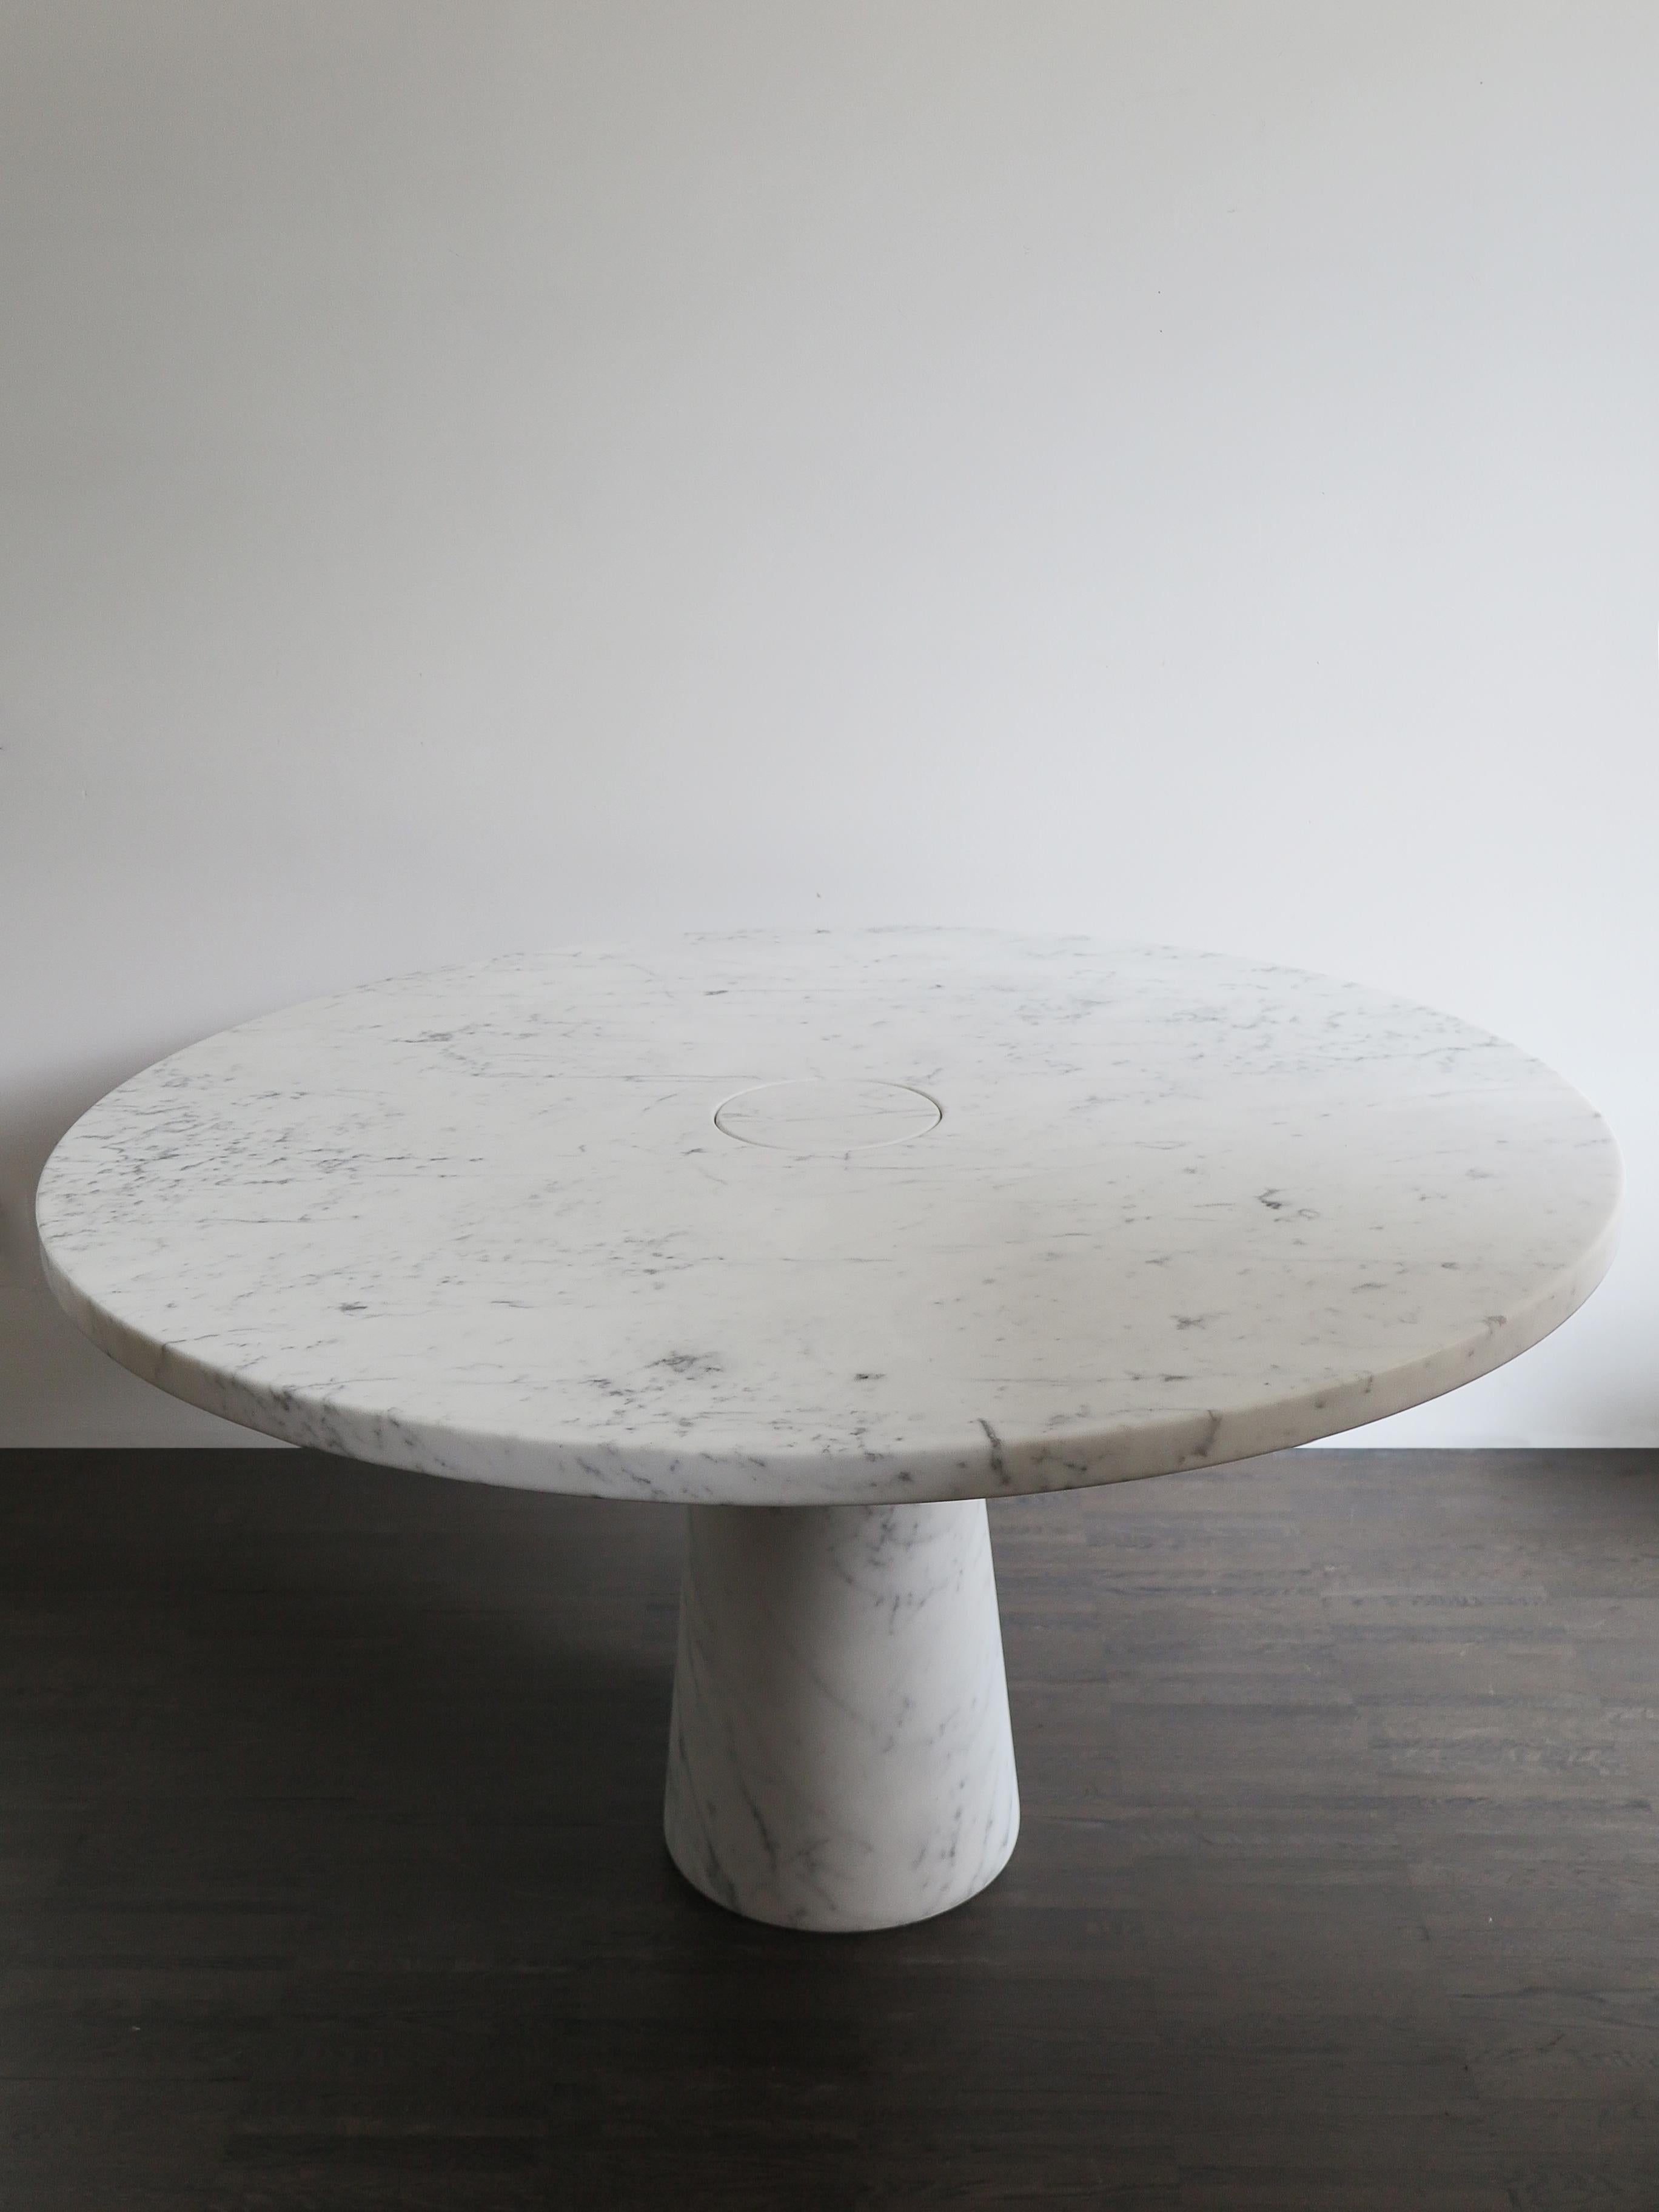 Table italienne en marbre blanc de Carrare de la série Eros, conçue par Angelo Mangiarotti en 1971. La table Eros implique un encastrement par gravité entre le plateau et le pied, rendu possible par la section tronconique du pied lui-même, qui